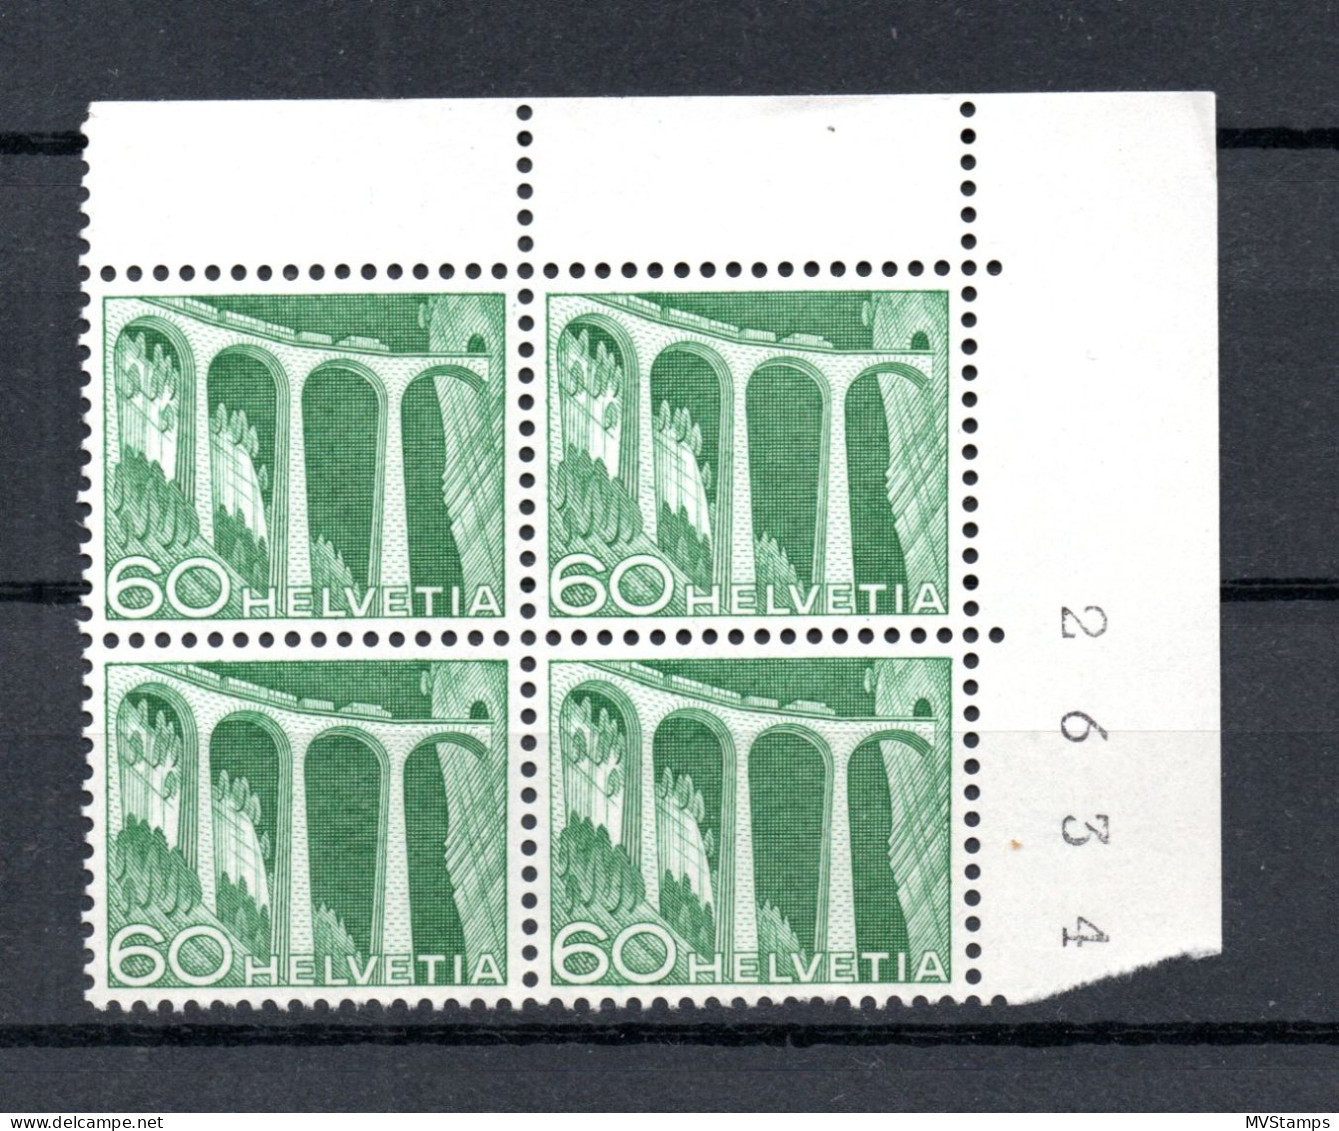 Schweiz 1949 Freimarke 539 In UER Viererblocke Postfrisch - Neufs